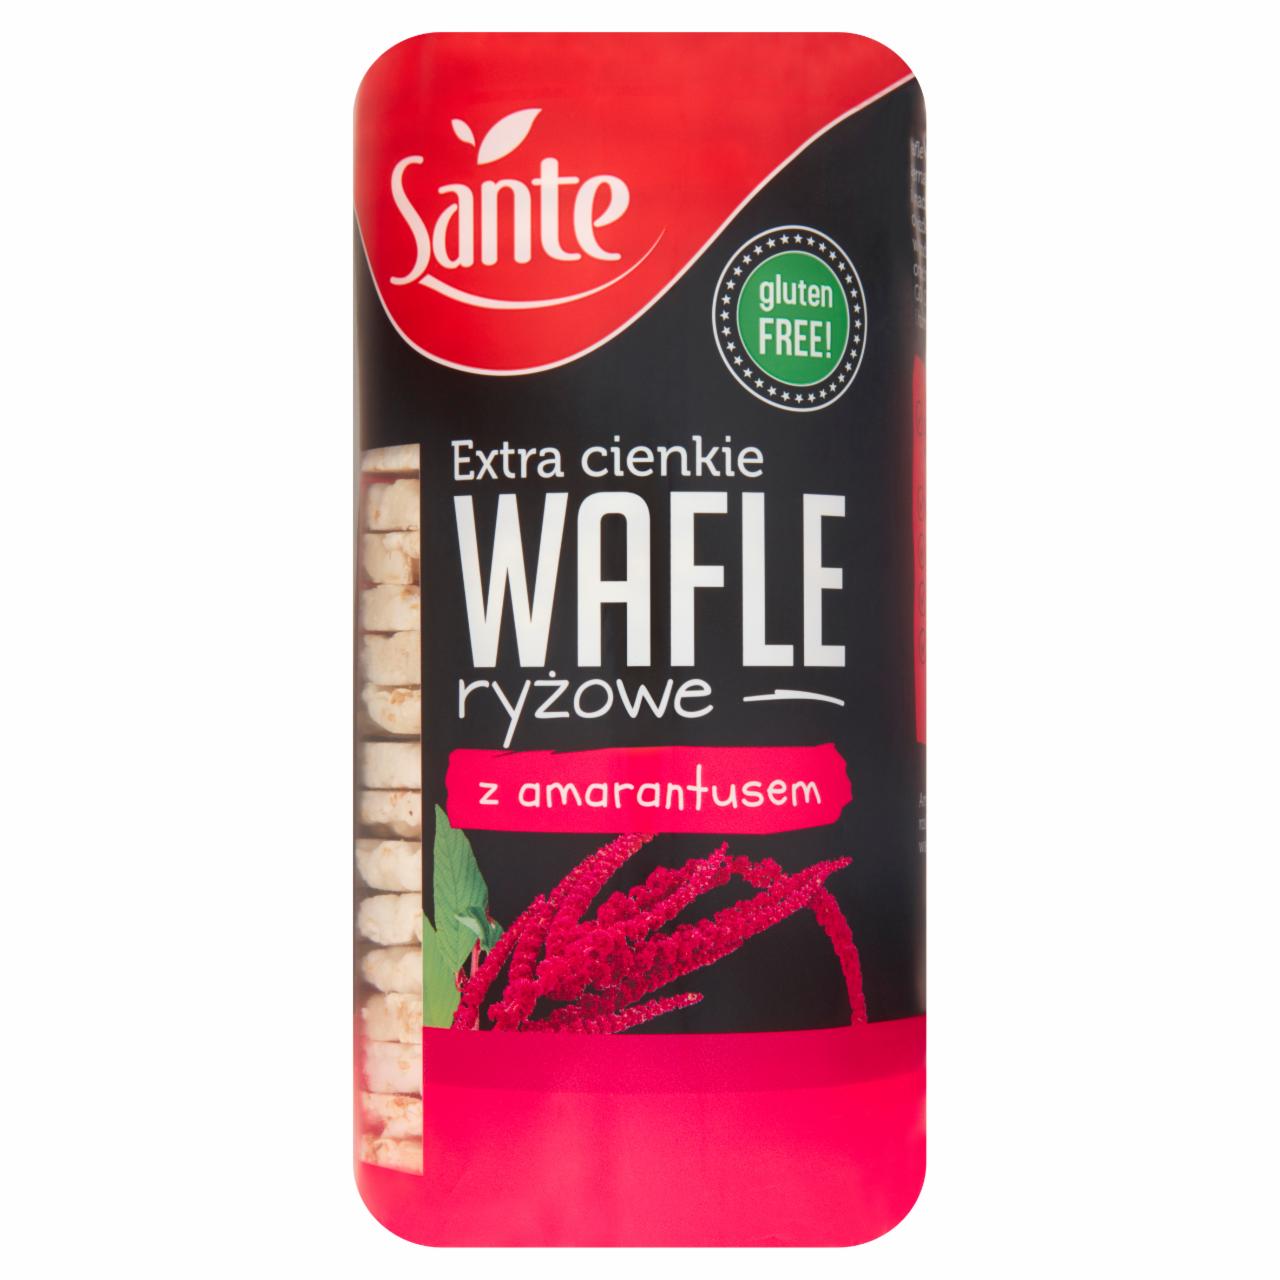 Zdjęcia - Sante Extra cienkie wafle ryżowe z amarantusem 110 g